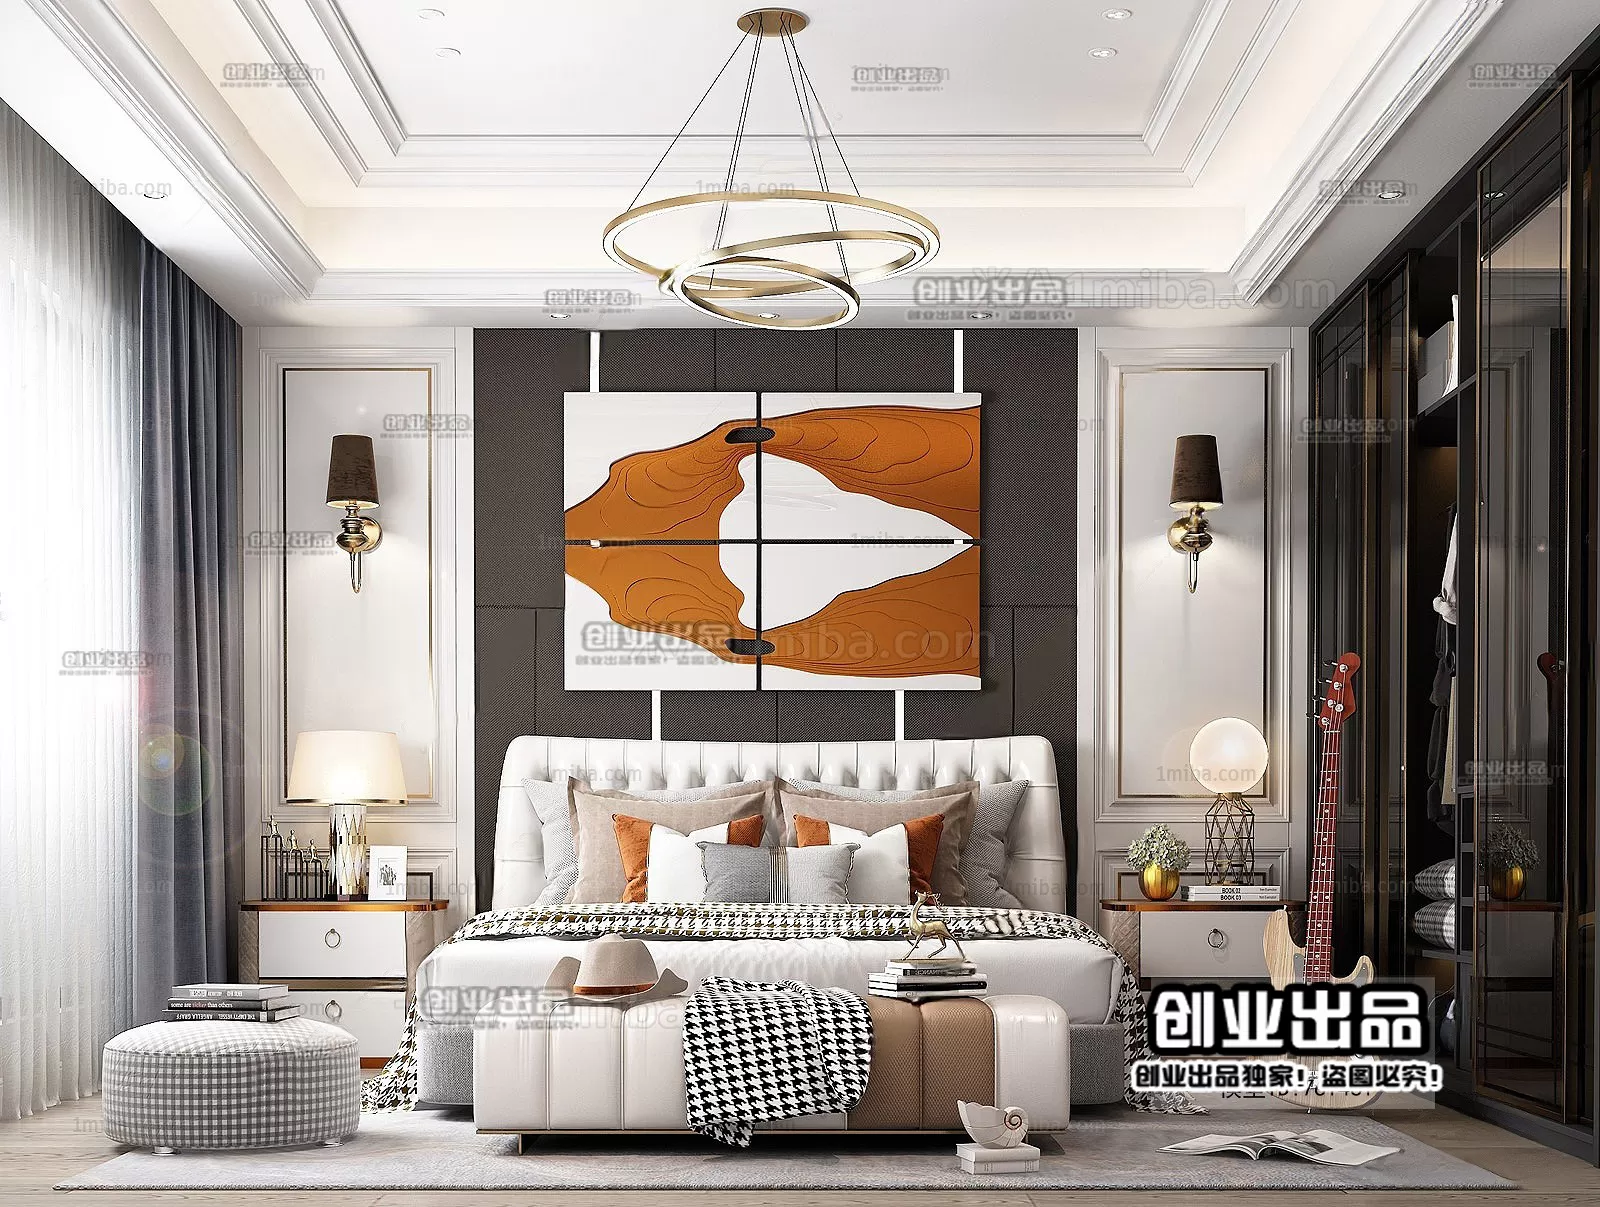 Bedroom – European Design – 3D66 – 3D Scenes – 028